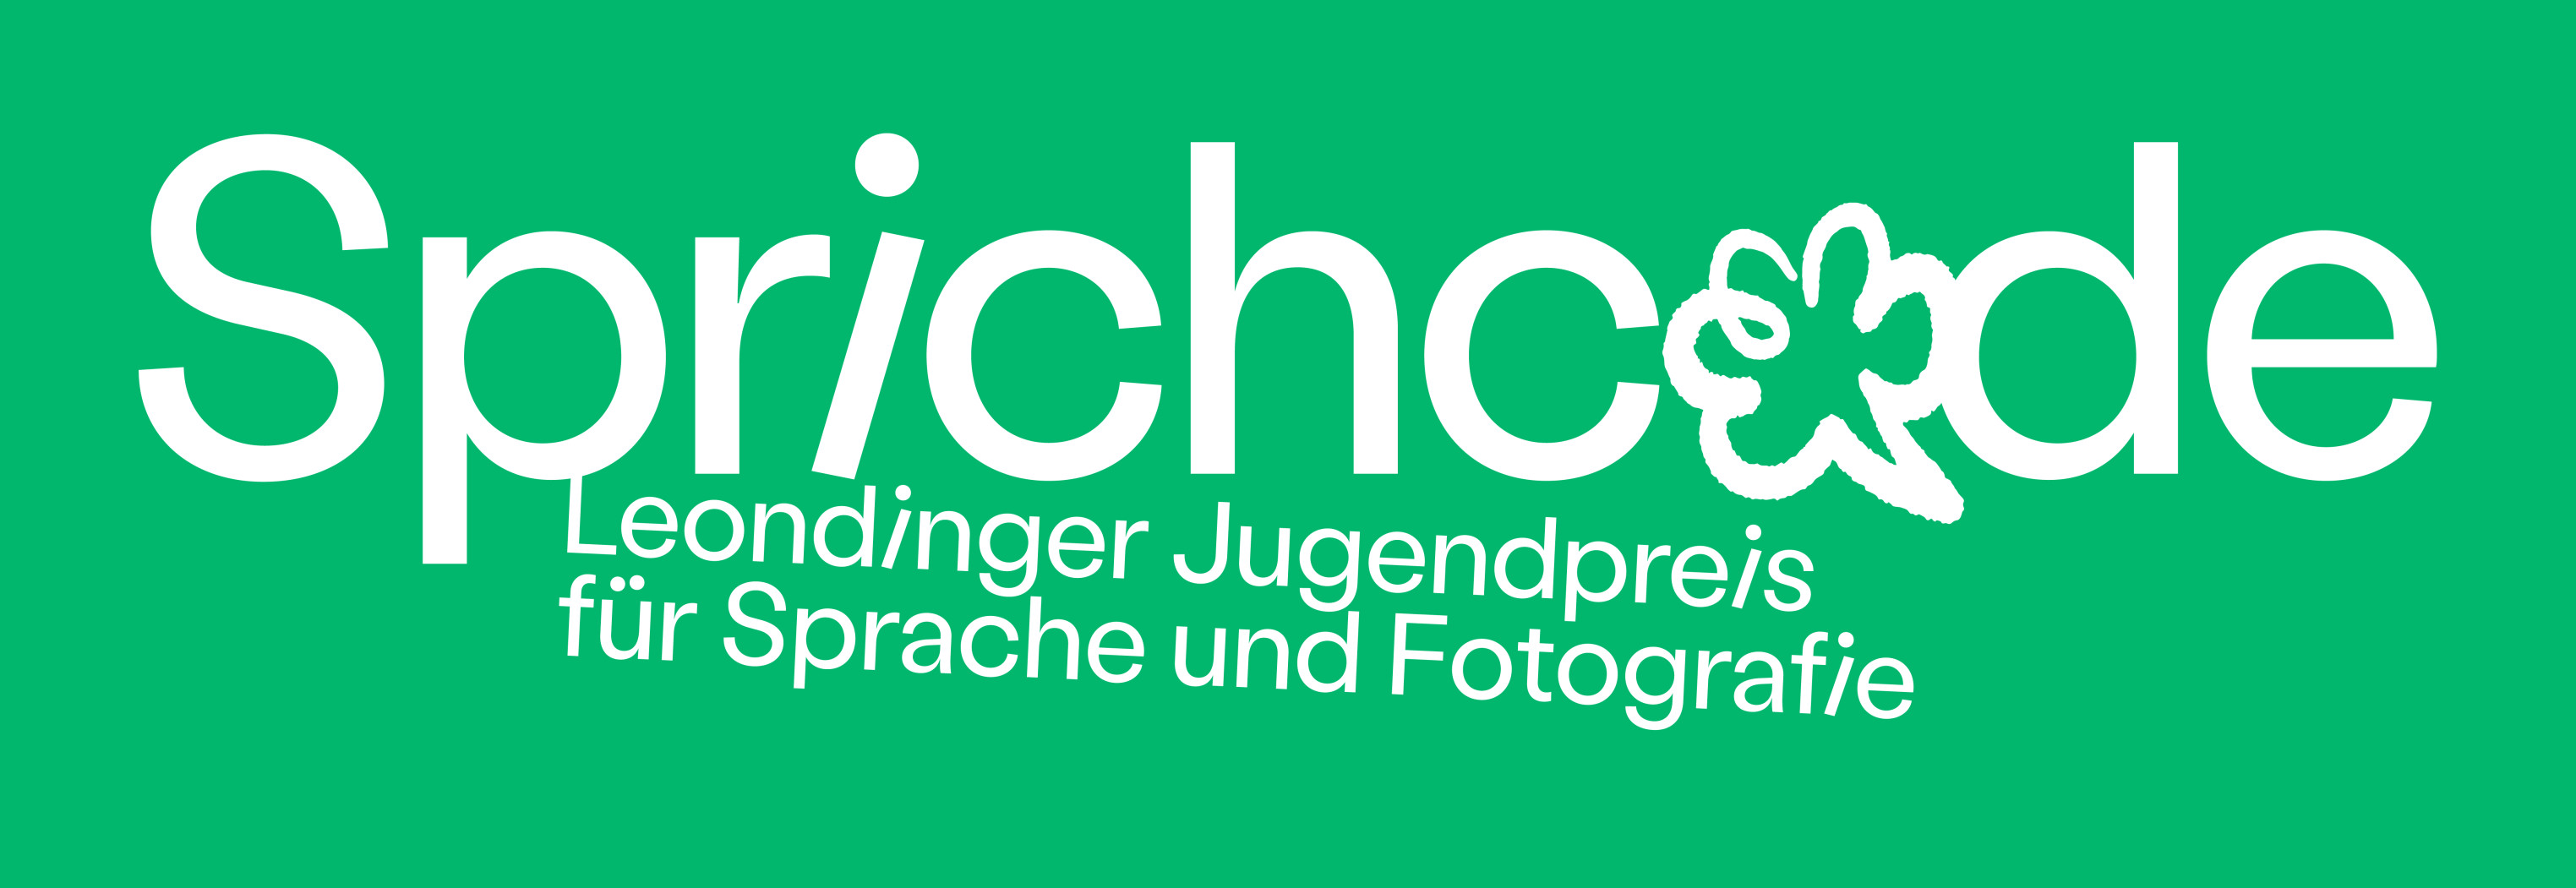 Auf grünem Hintergrund steht in weißer Schrift: Sprichcode. Leondinger Jugendpreis für Sprache und Fotografie